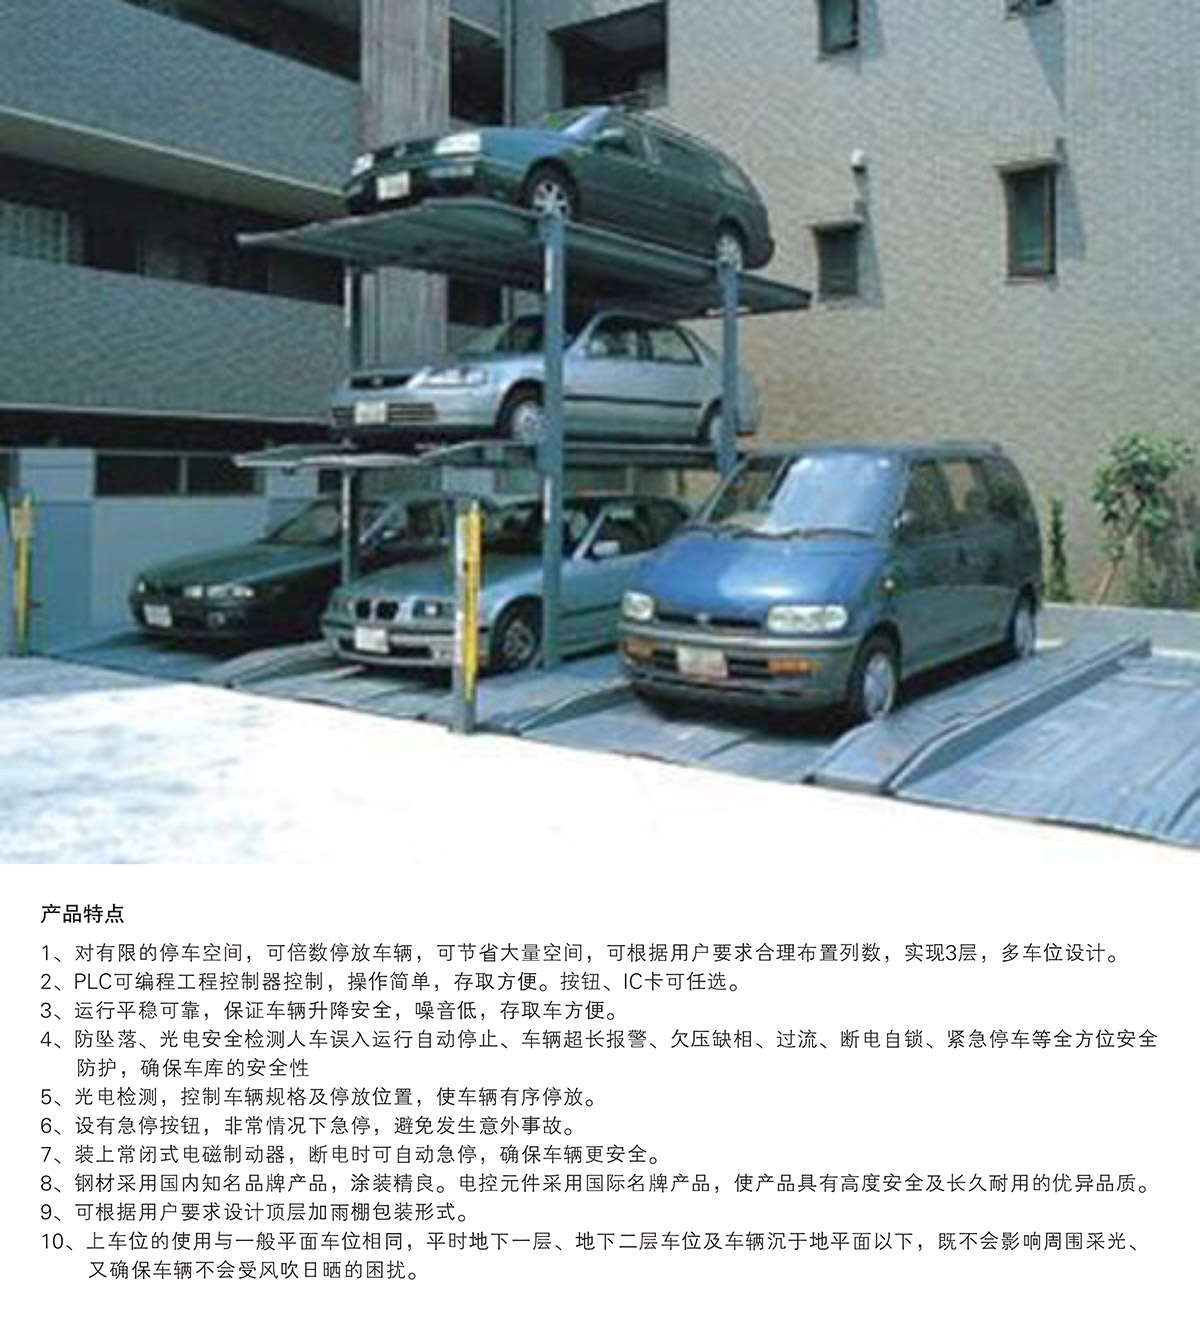 停车设备PJS3D2三层地坑简易升降立体车库设备产品特点.jpg